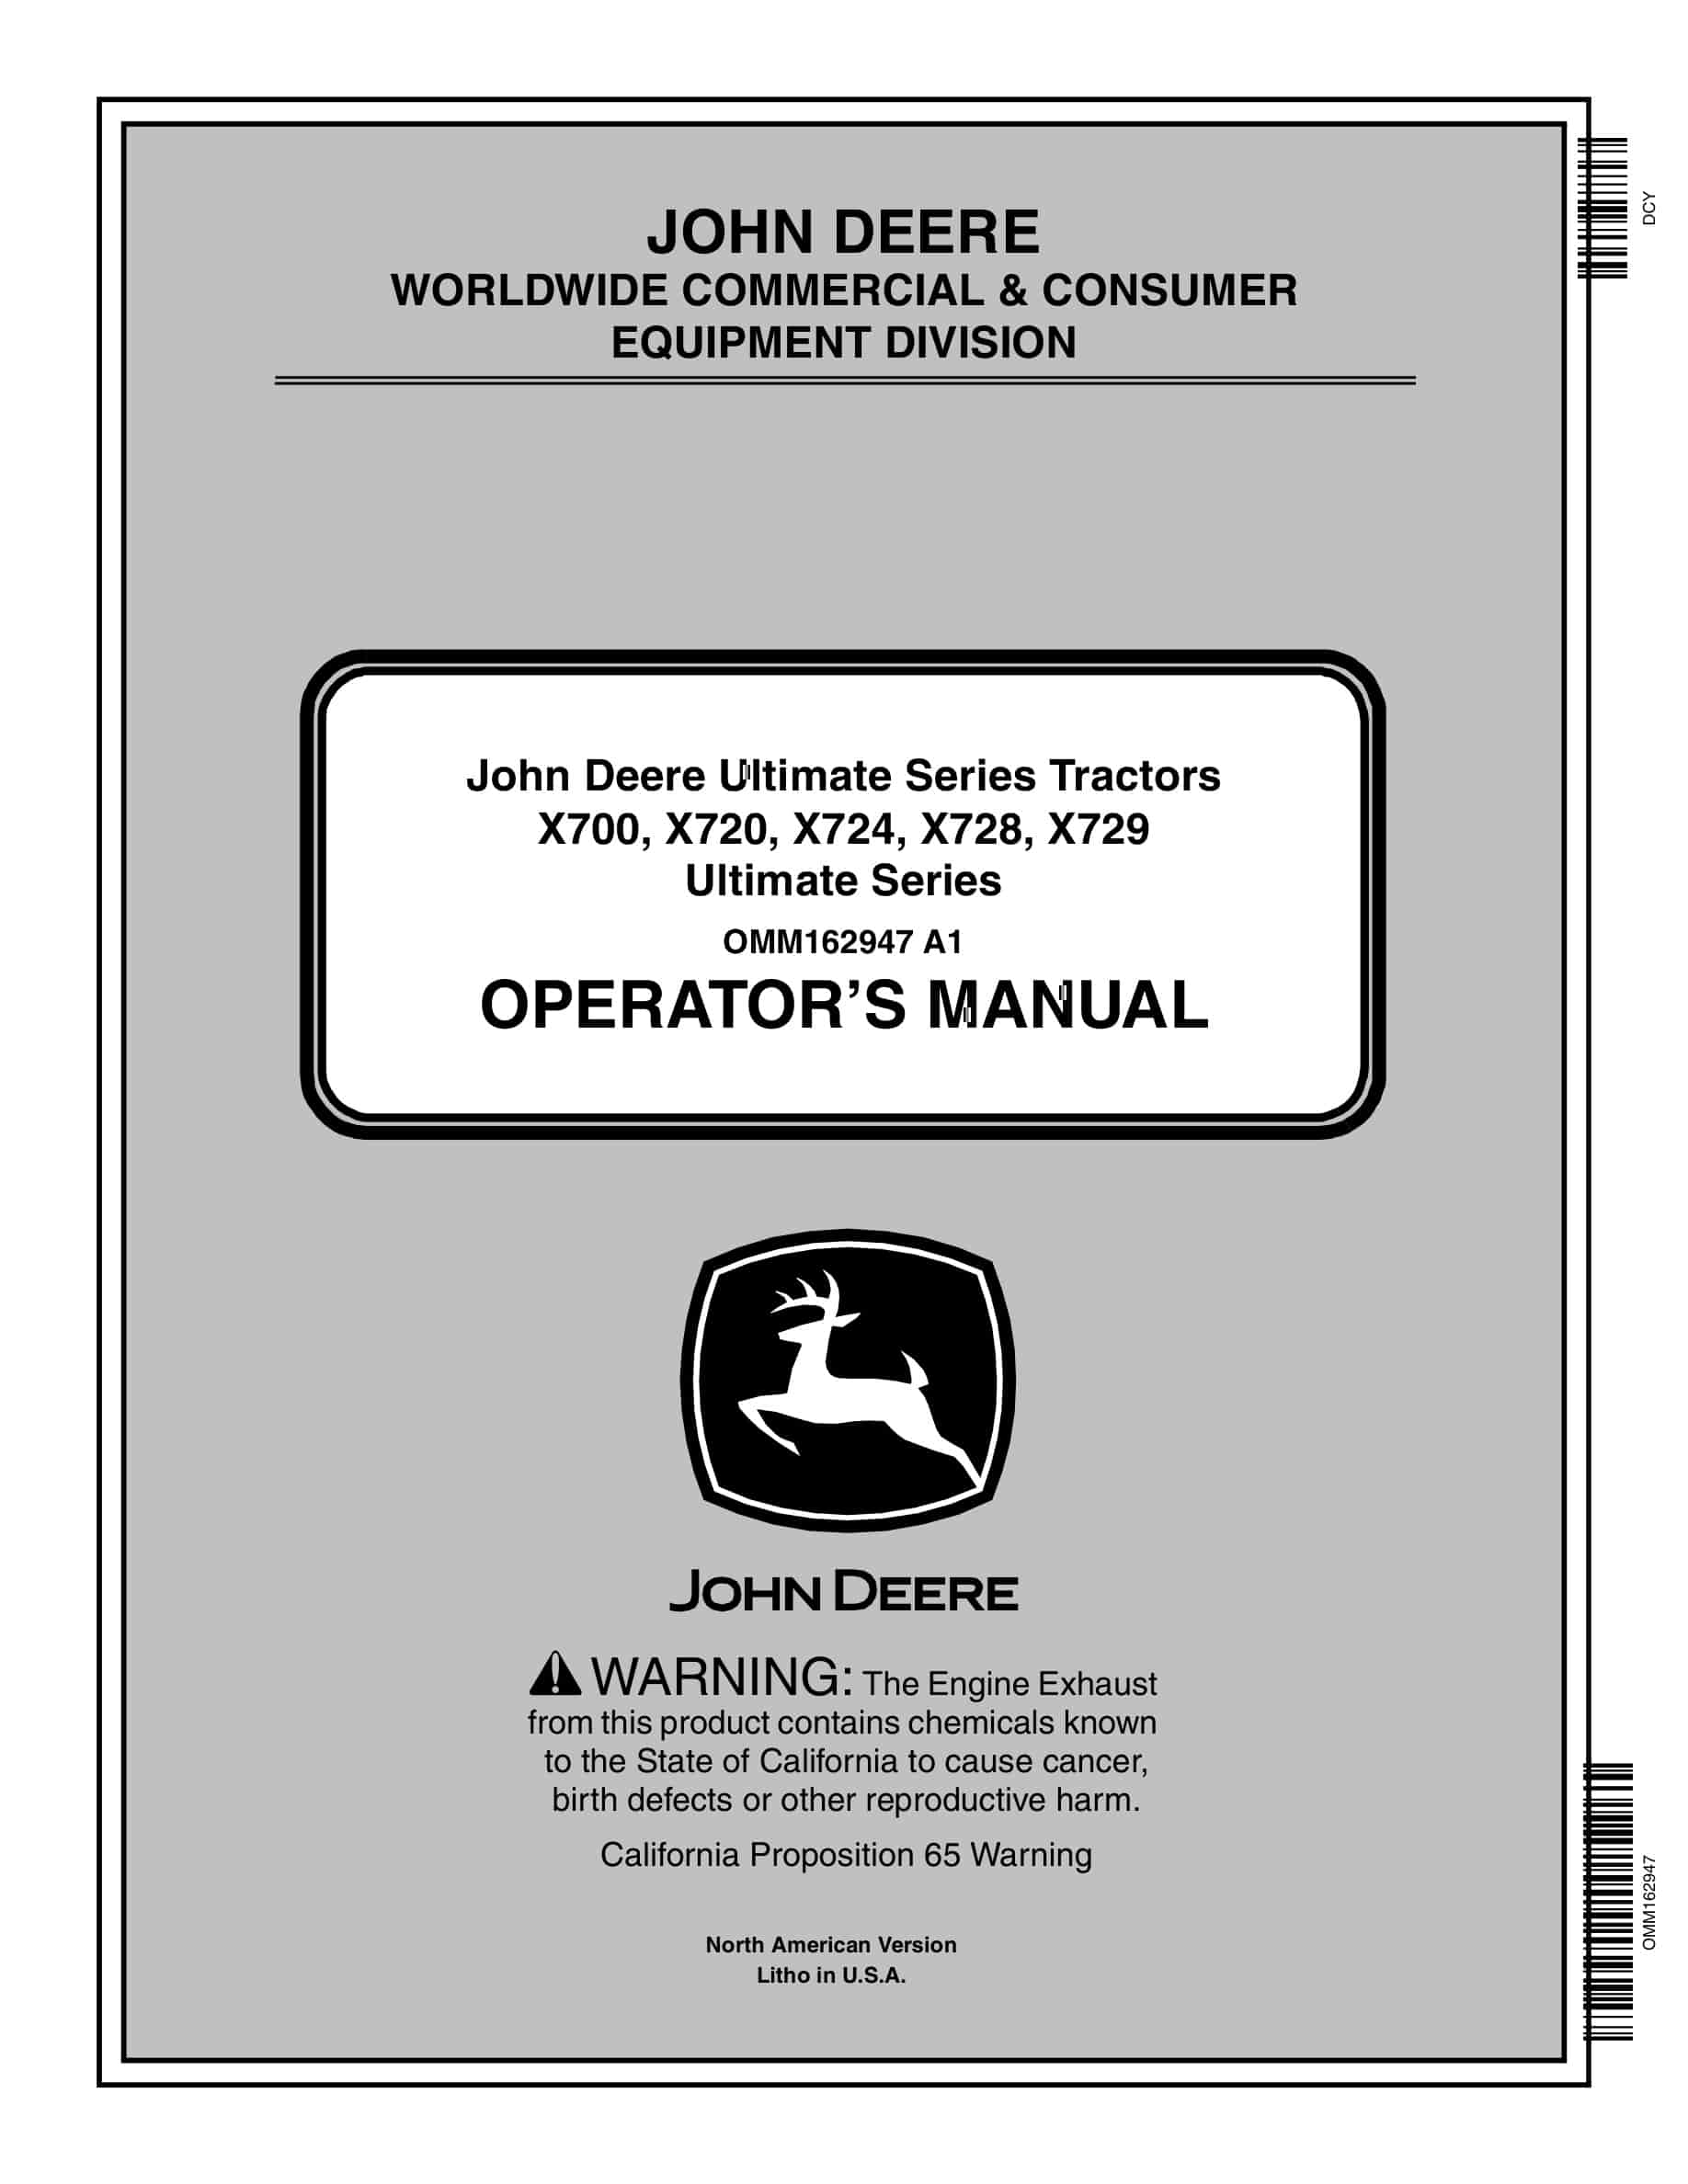 John Deere X700, X720, X724, X728, X729 Tractor Operator Manual OMM162947-1